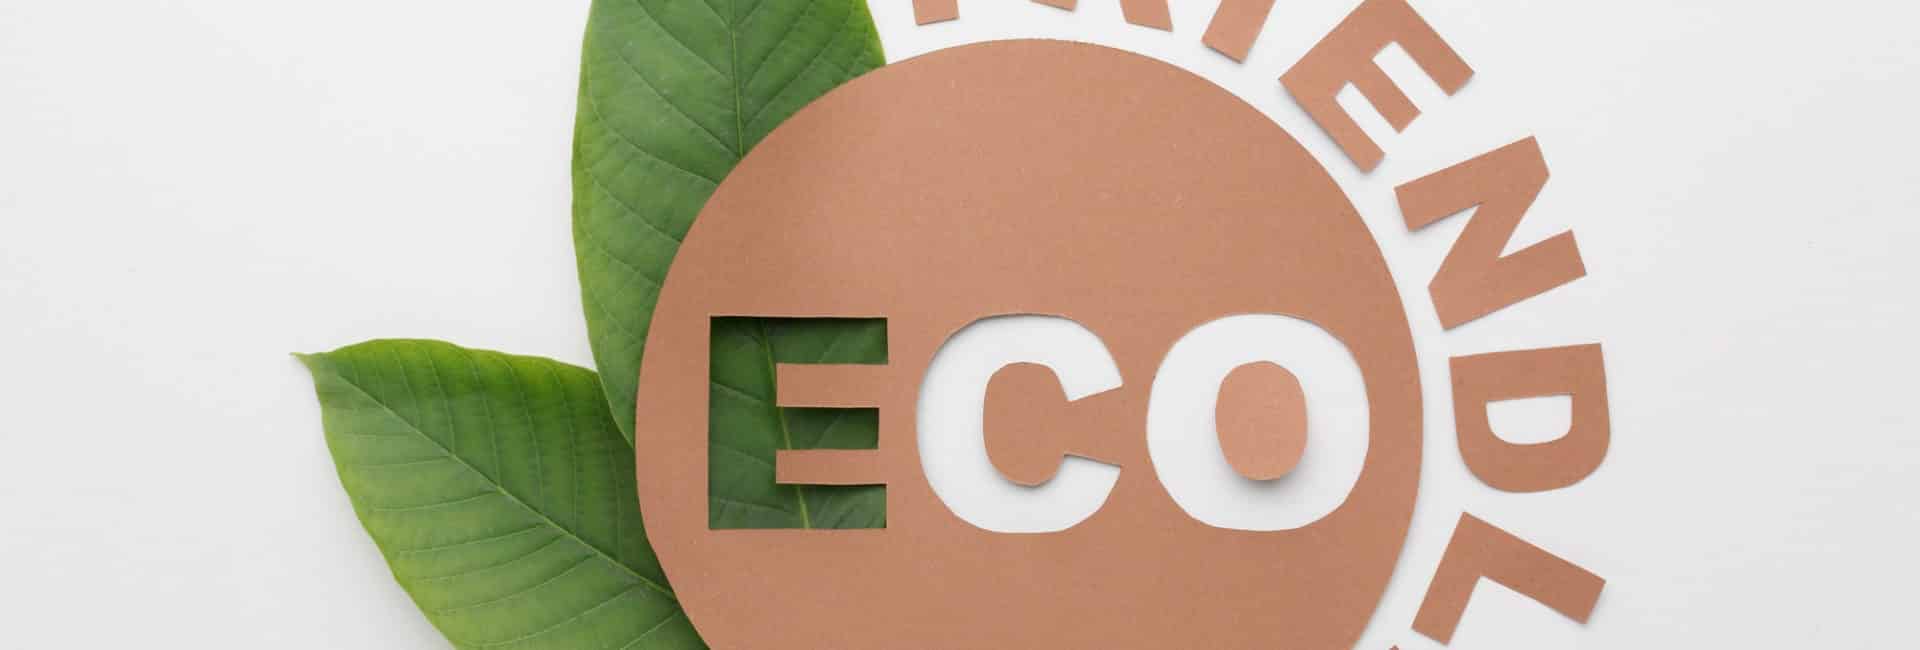 Imagem de uma planta verde ao redor da plavra eco friendly para simbolizar o que é eco friendly